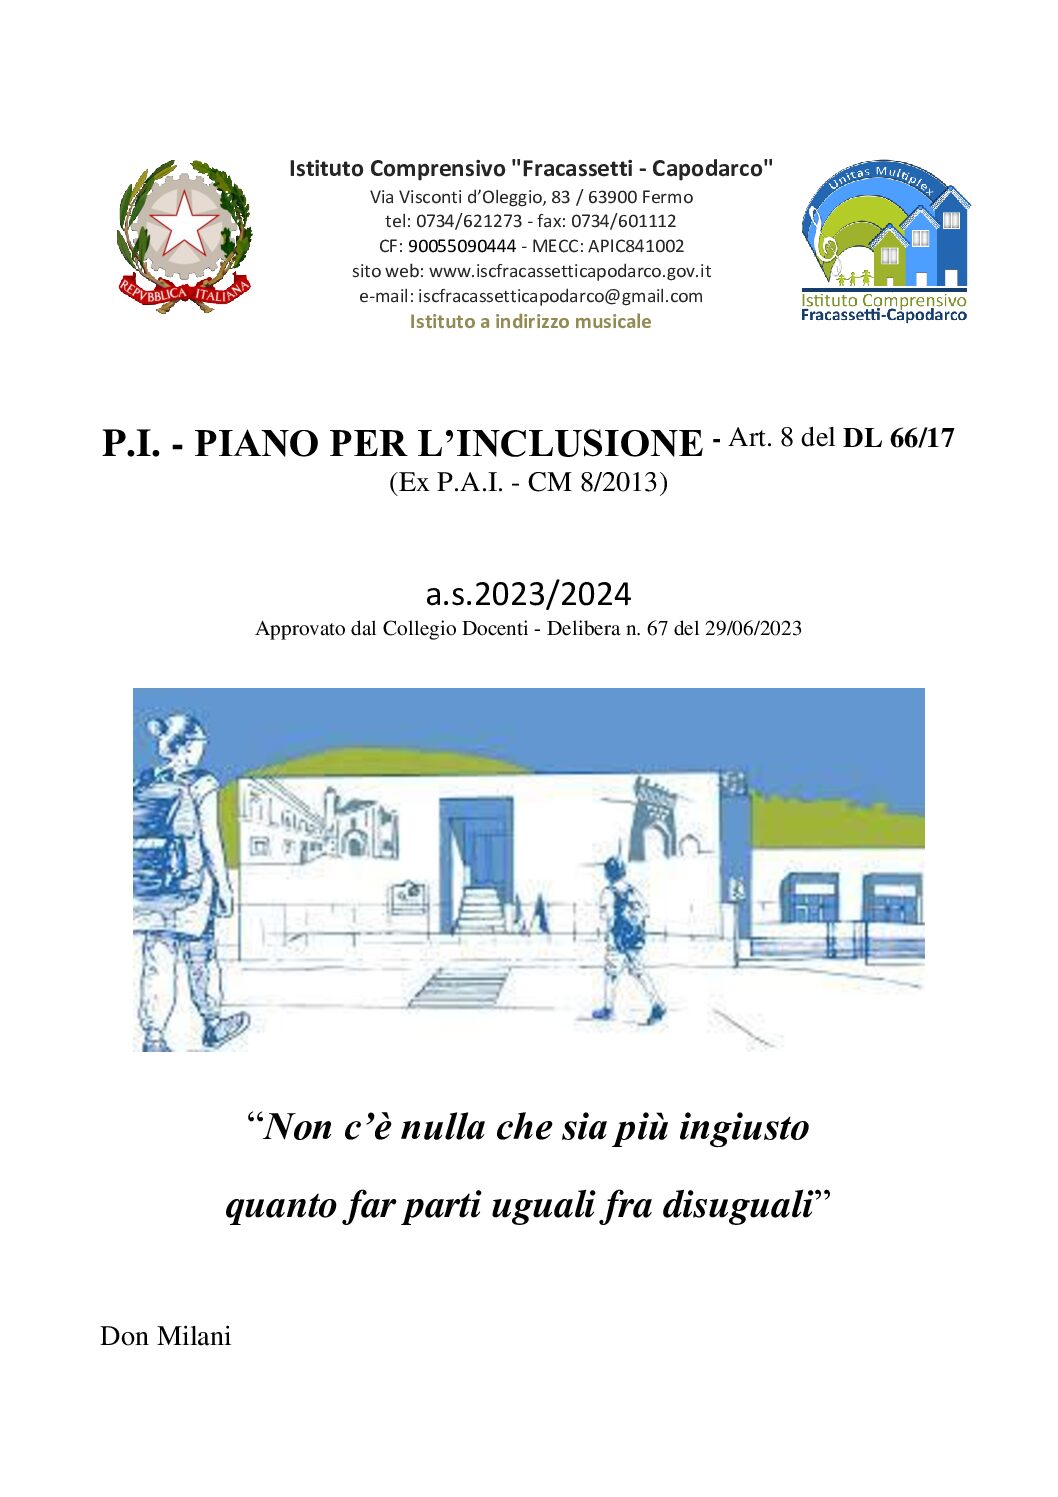 Piano Inclusione_ISC FRACASSETTI-CAPODARCO_2023-2024-agg.